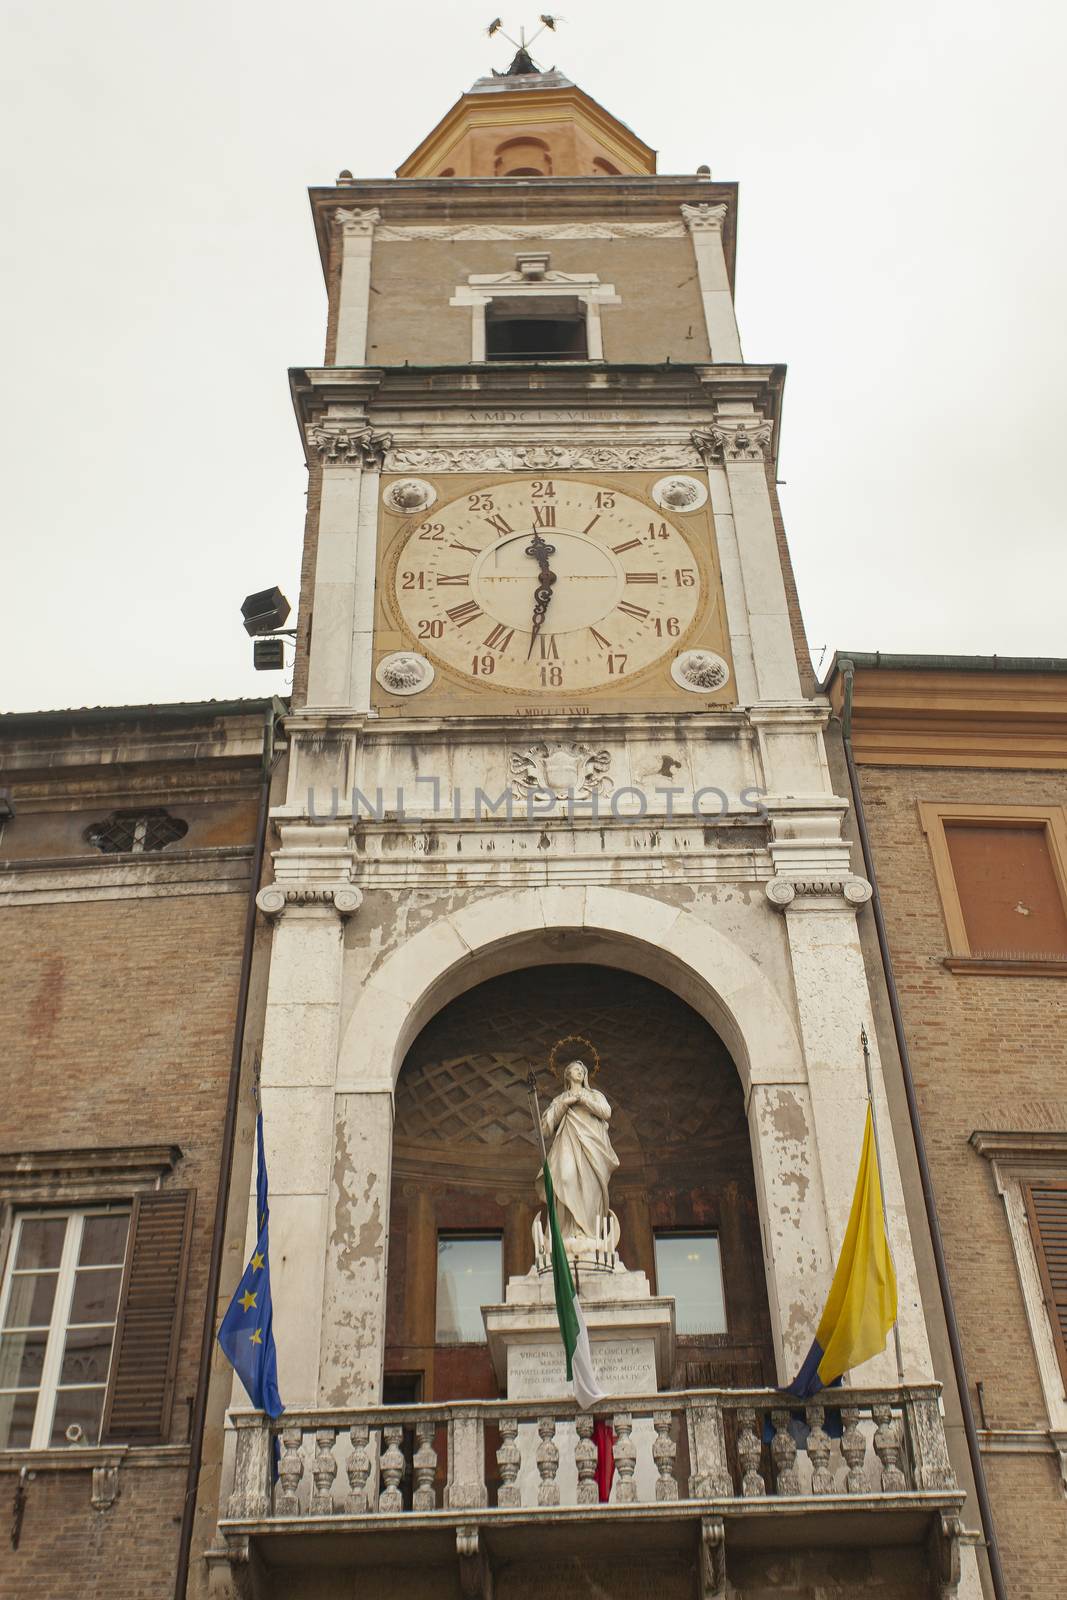 Palazzo comunale in Modena by pippocarlot